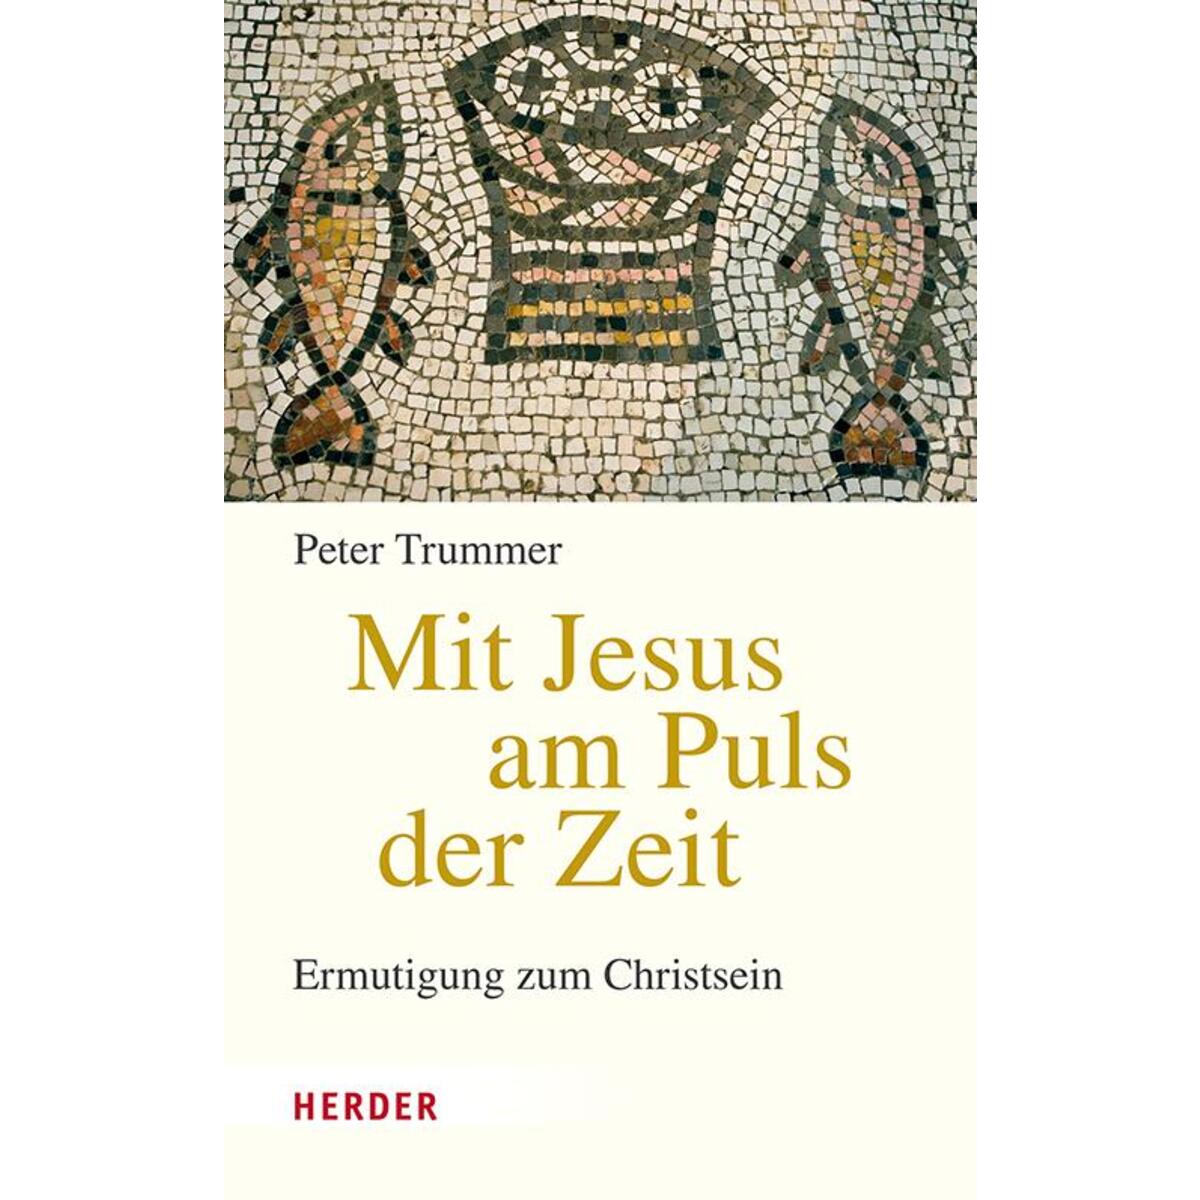 Mit Jesus am Puls der Zeit von Herder Verlag GmbH